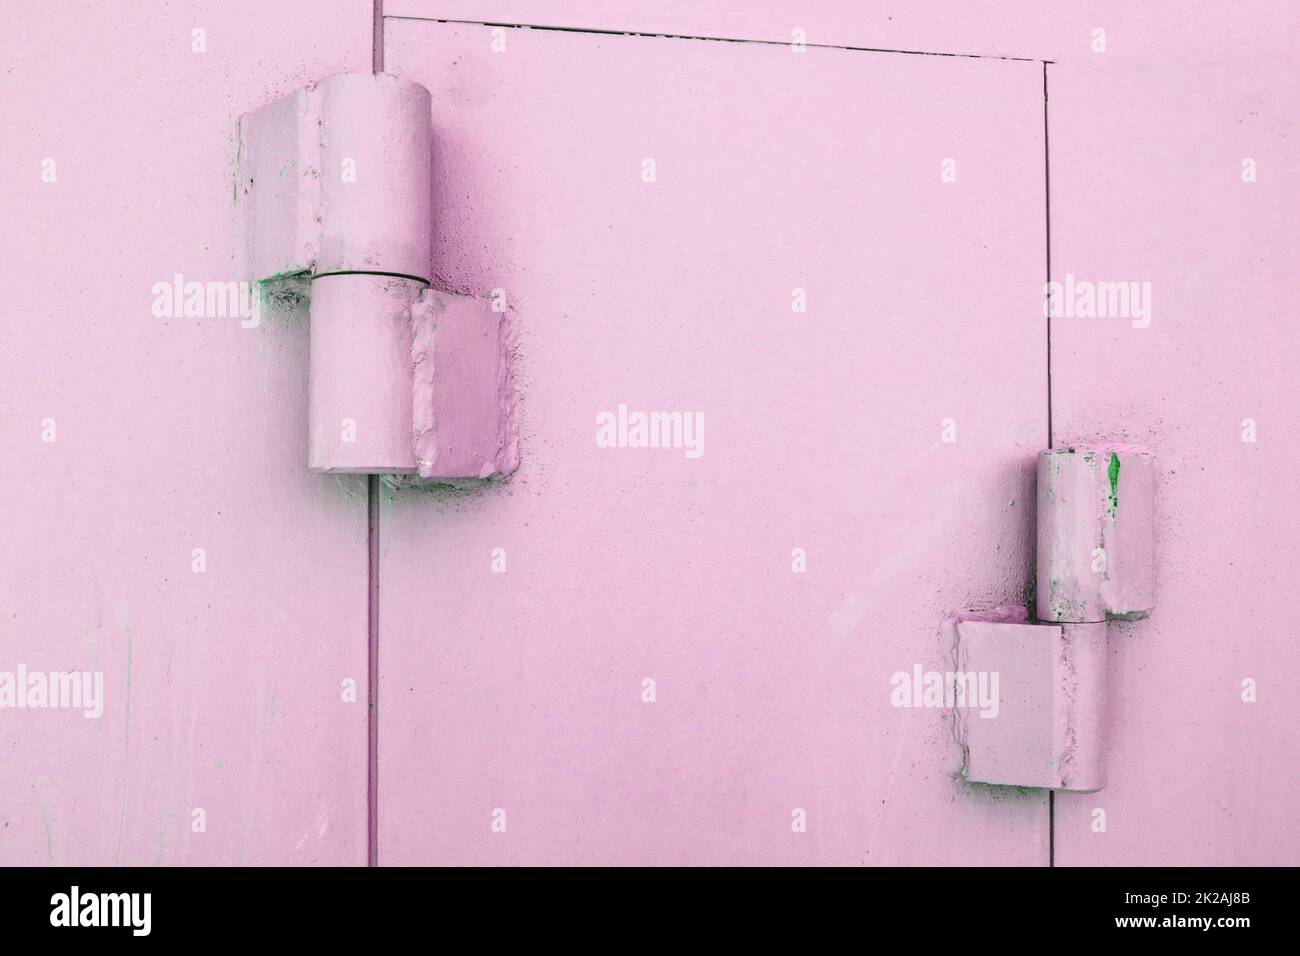 Primo piano delle cerniere metalliche sui cancelli di un garage in metallo, verniciato di rosa, all'aperto Foto Stock